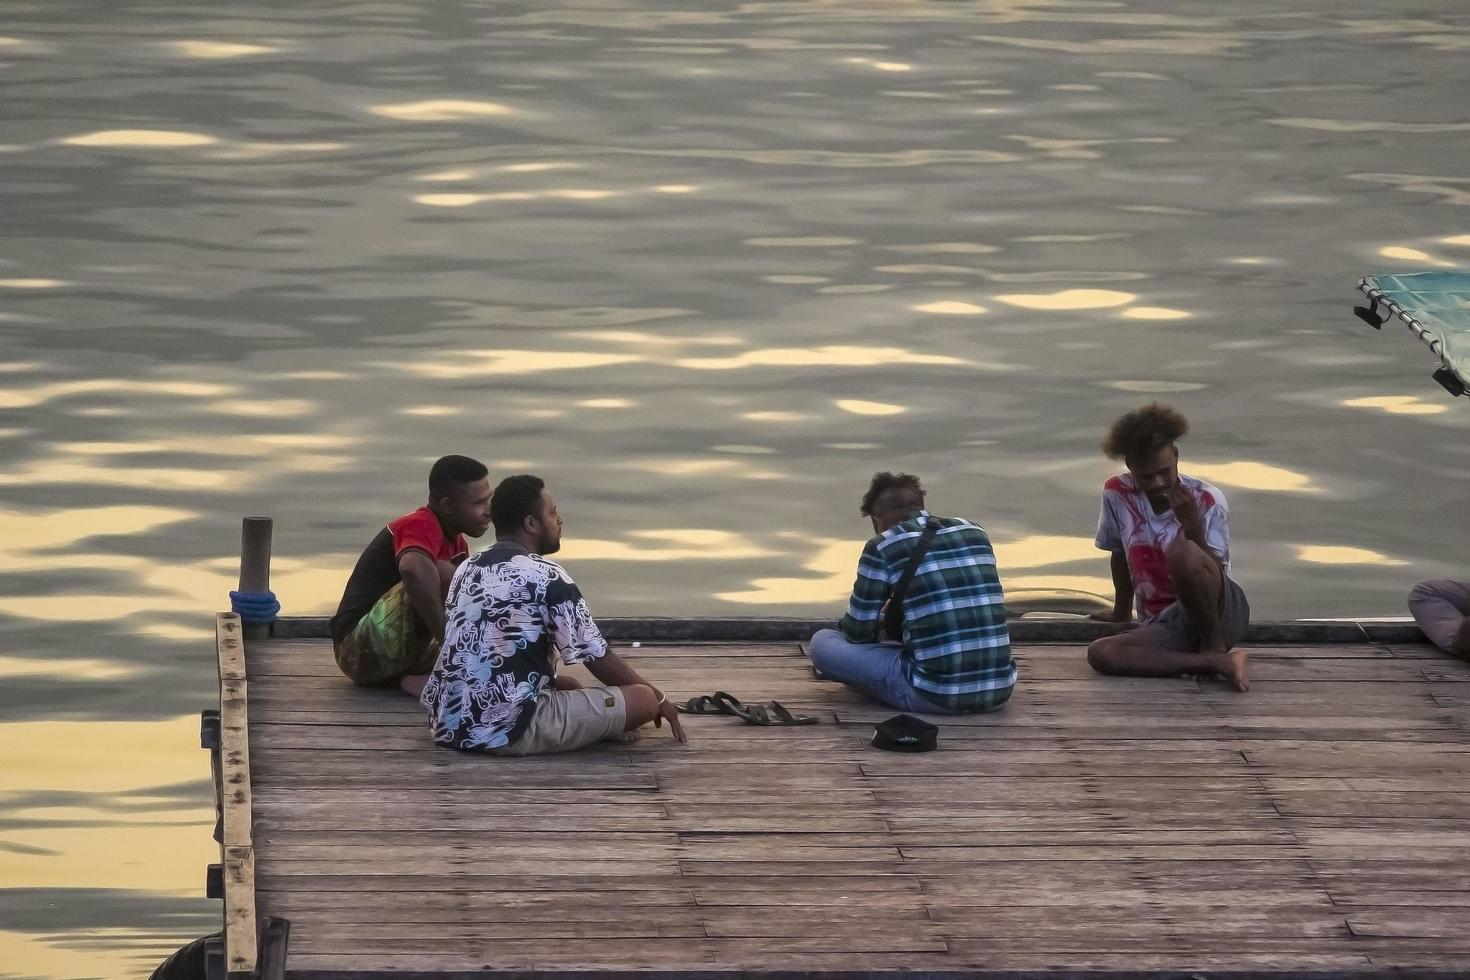 sorong, papúa occidental, indonesia, 30 de septiembre de 2021. gente pasando el rato en el embarcadero de madera foto